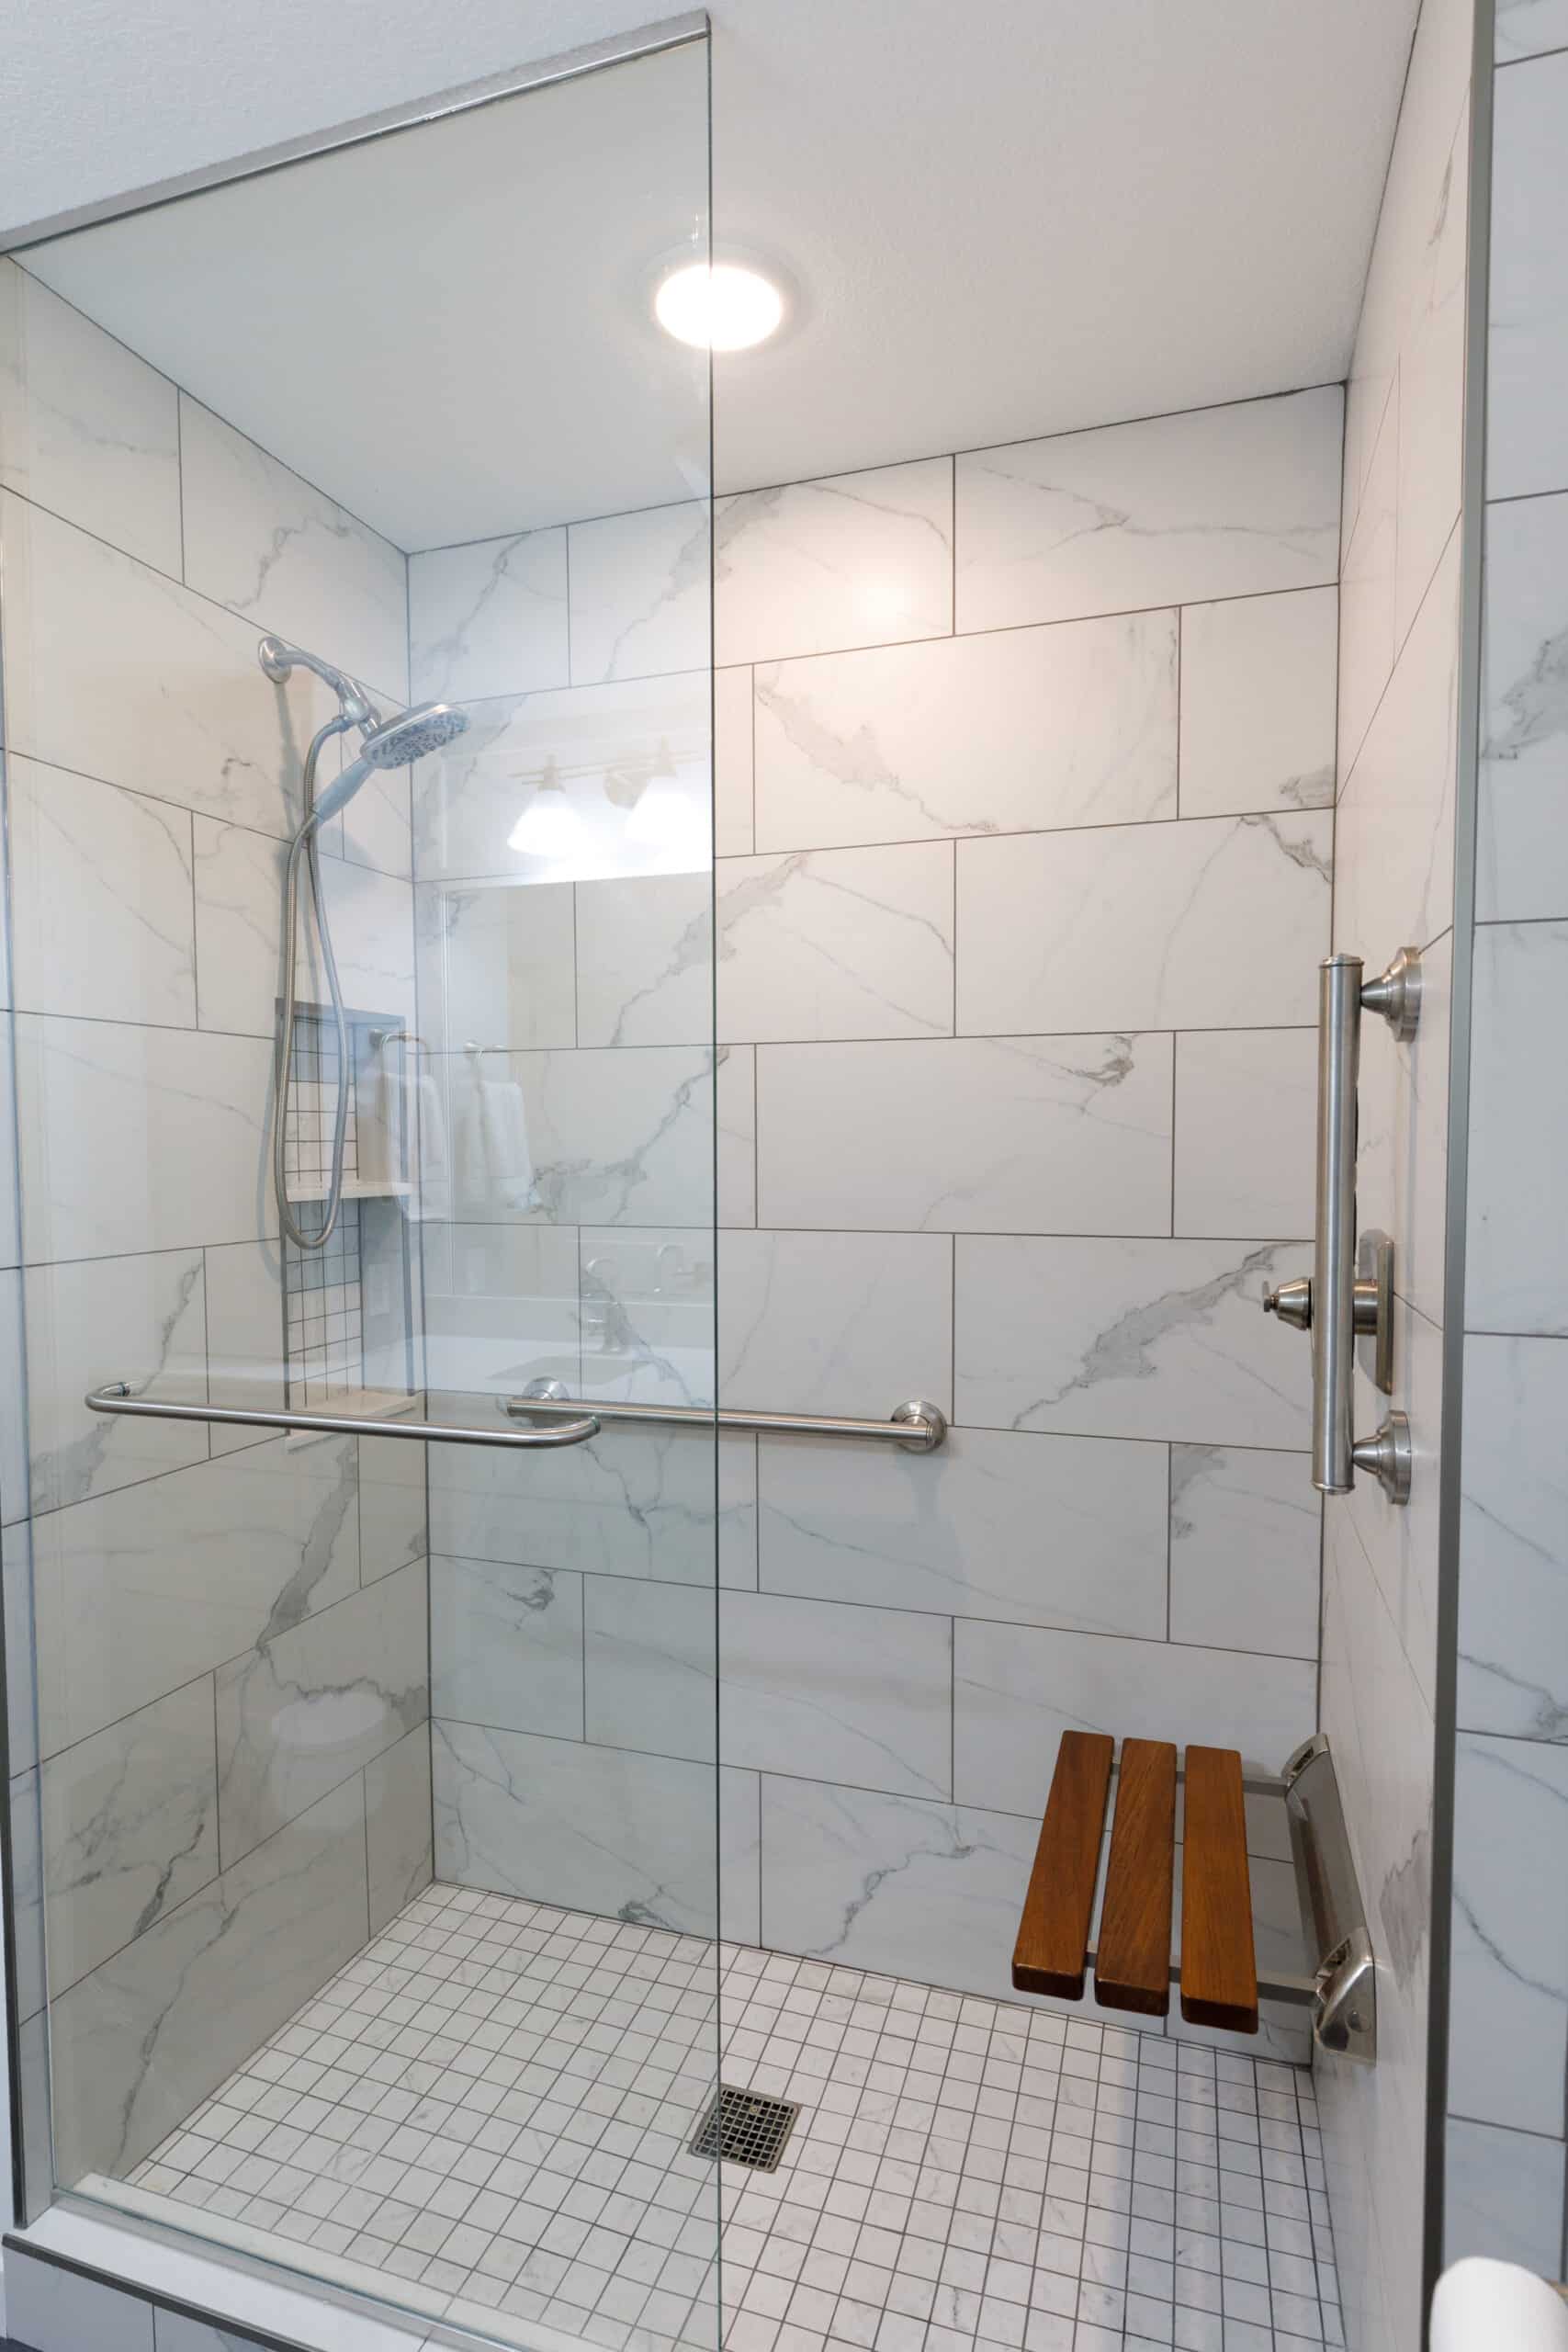 Bathroom walk in shower with glass doors